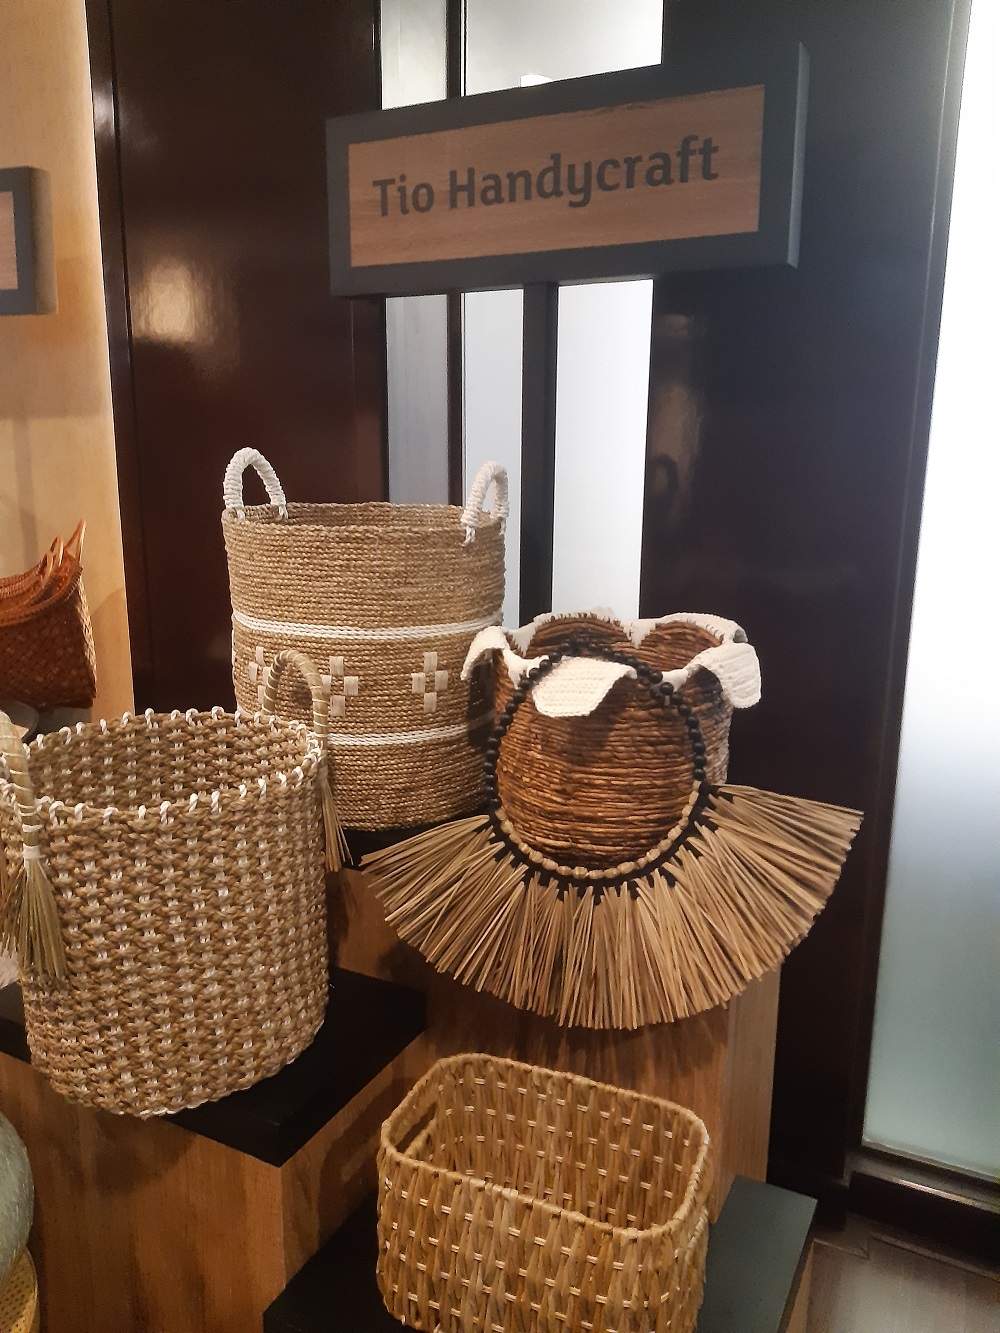 Tio Handicraft